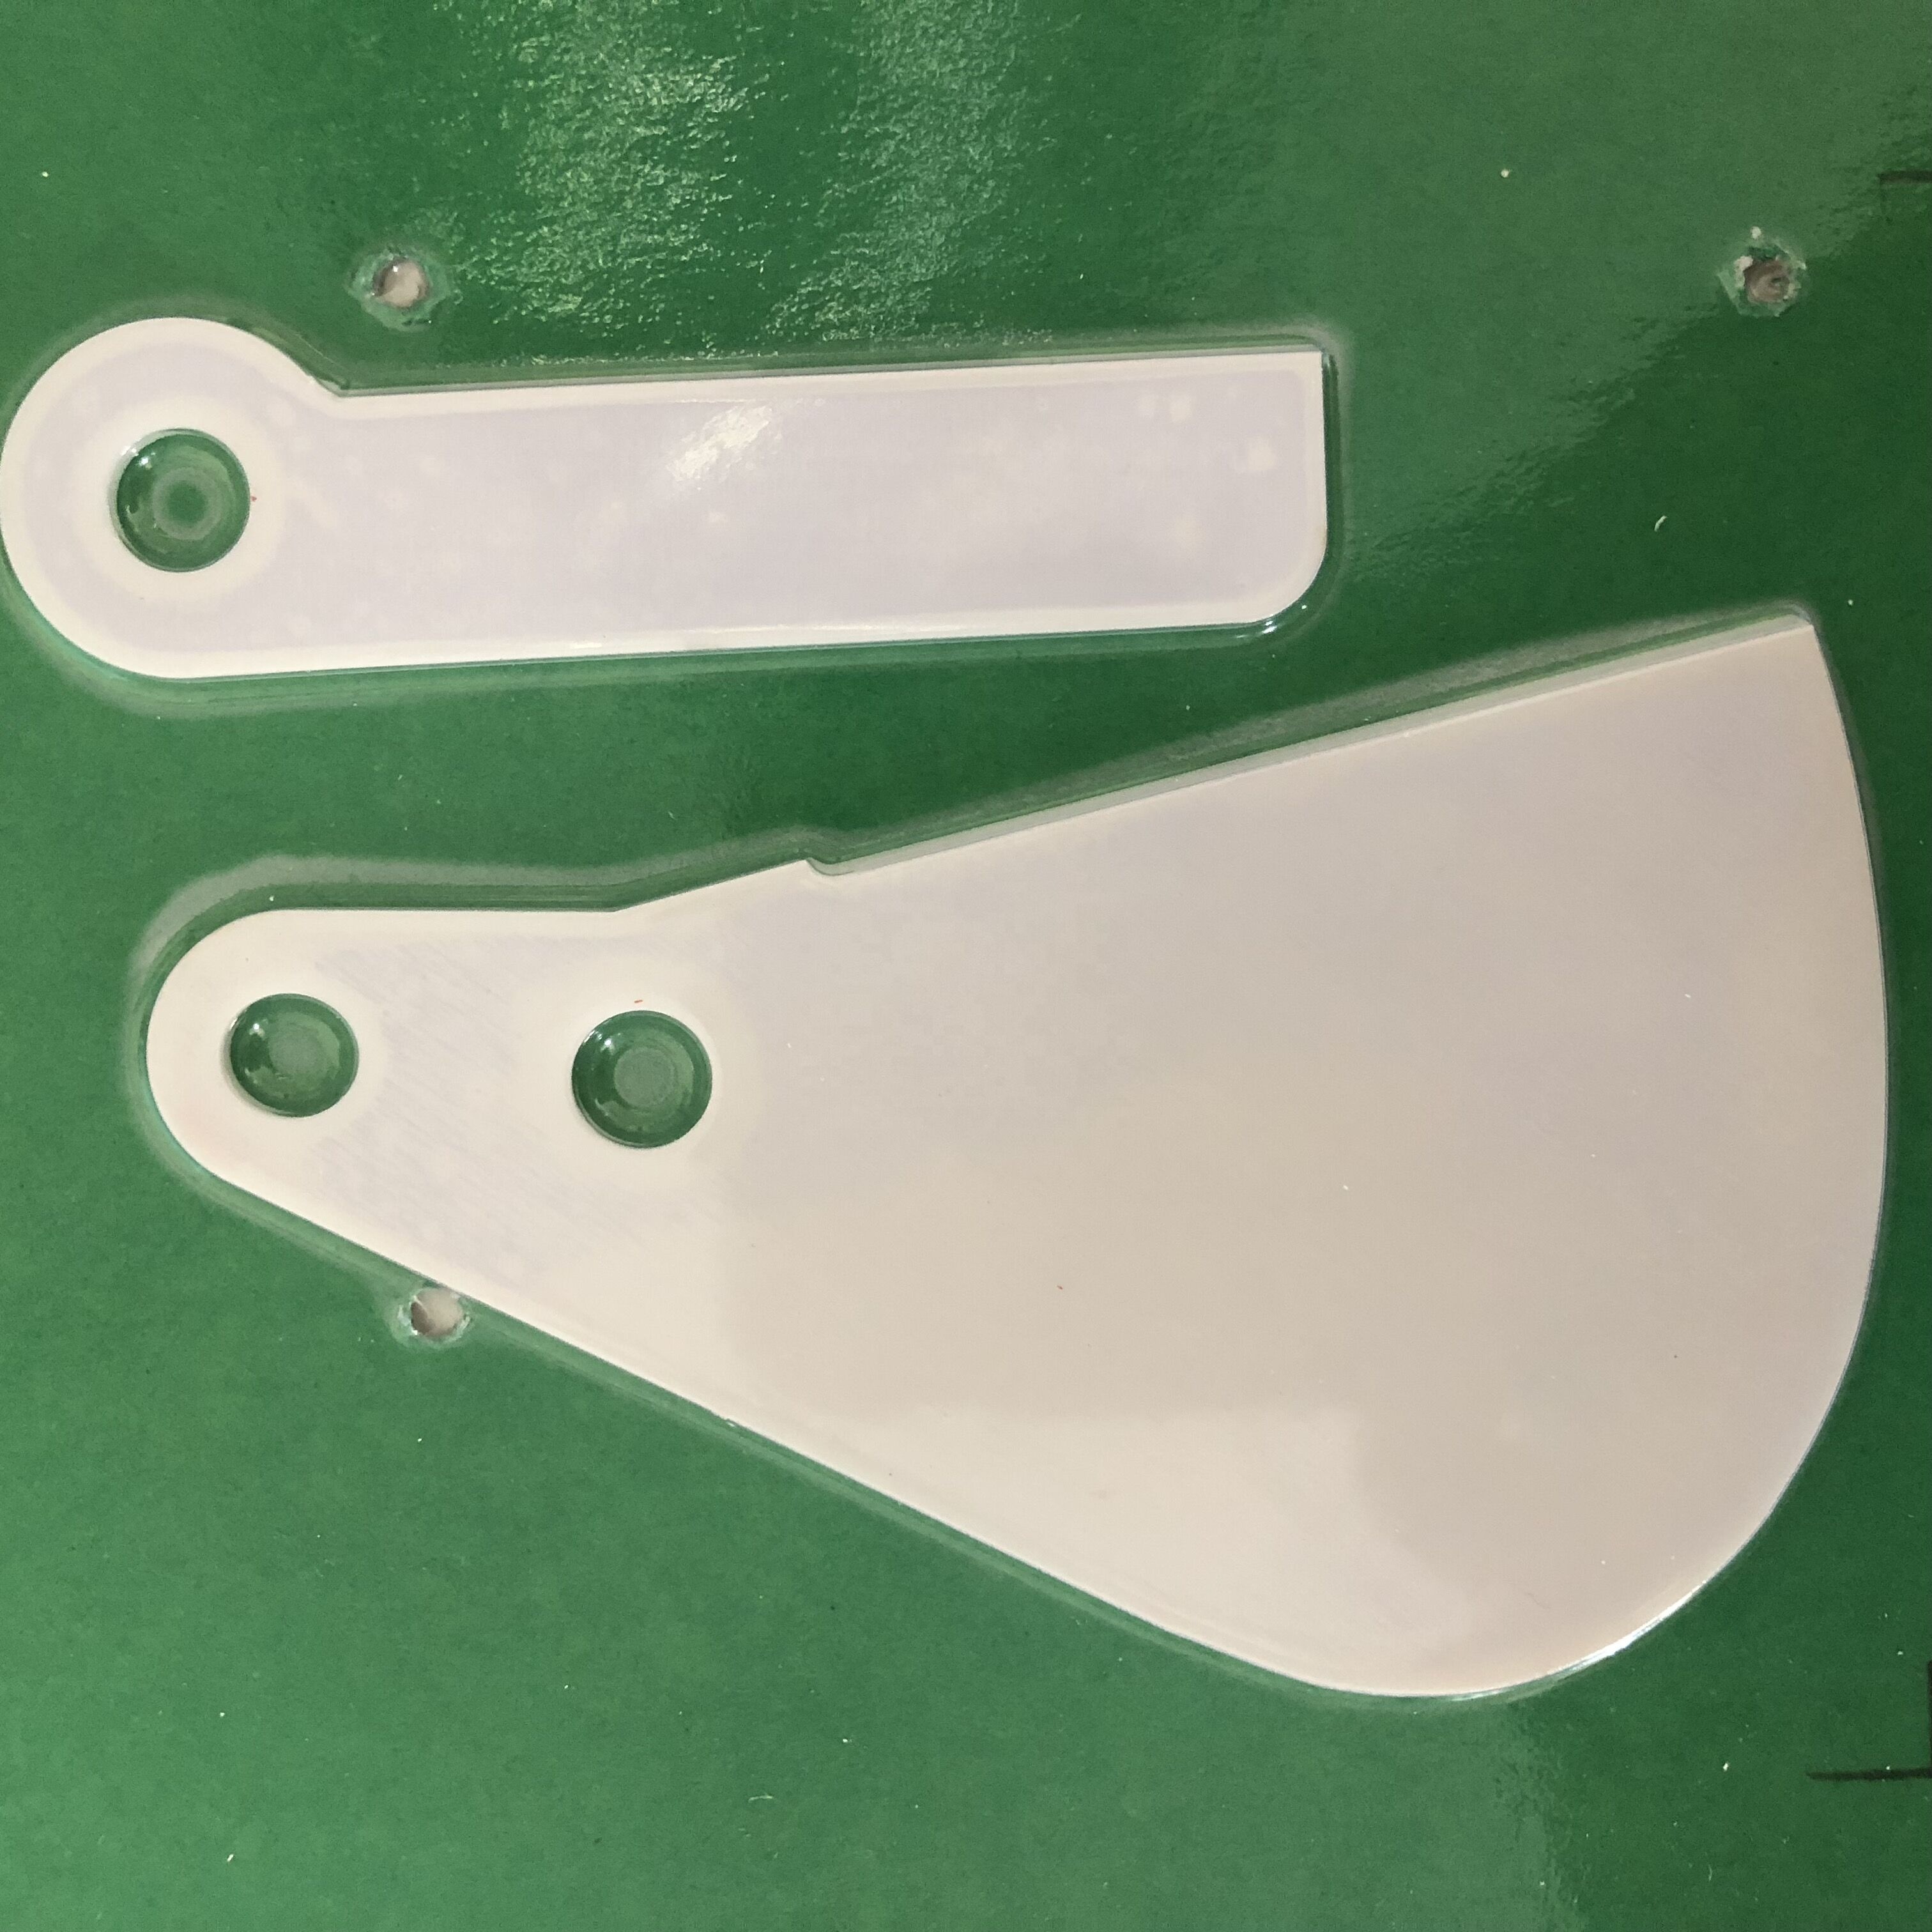 murata machconer ceramic Blade with part number 008-370-005/006